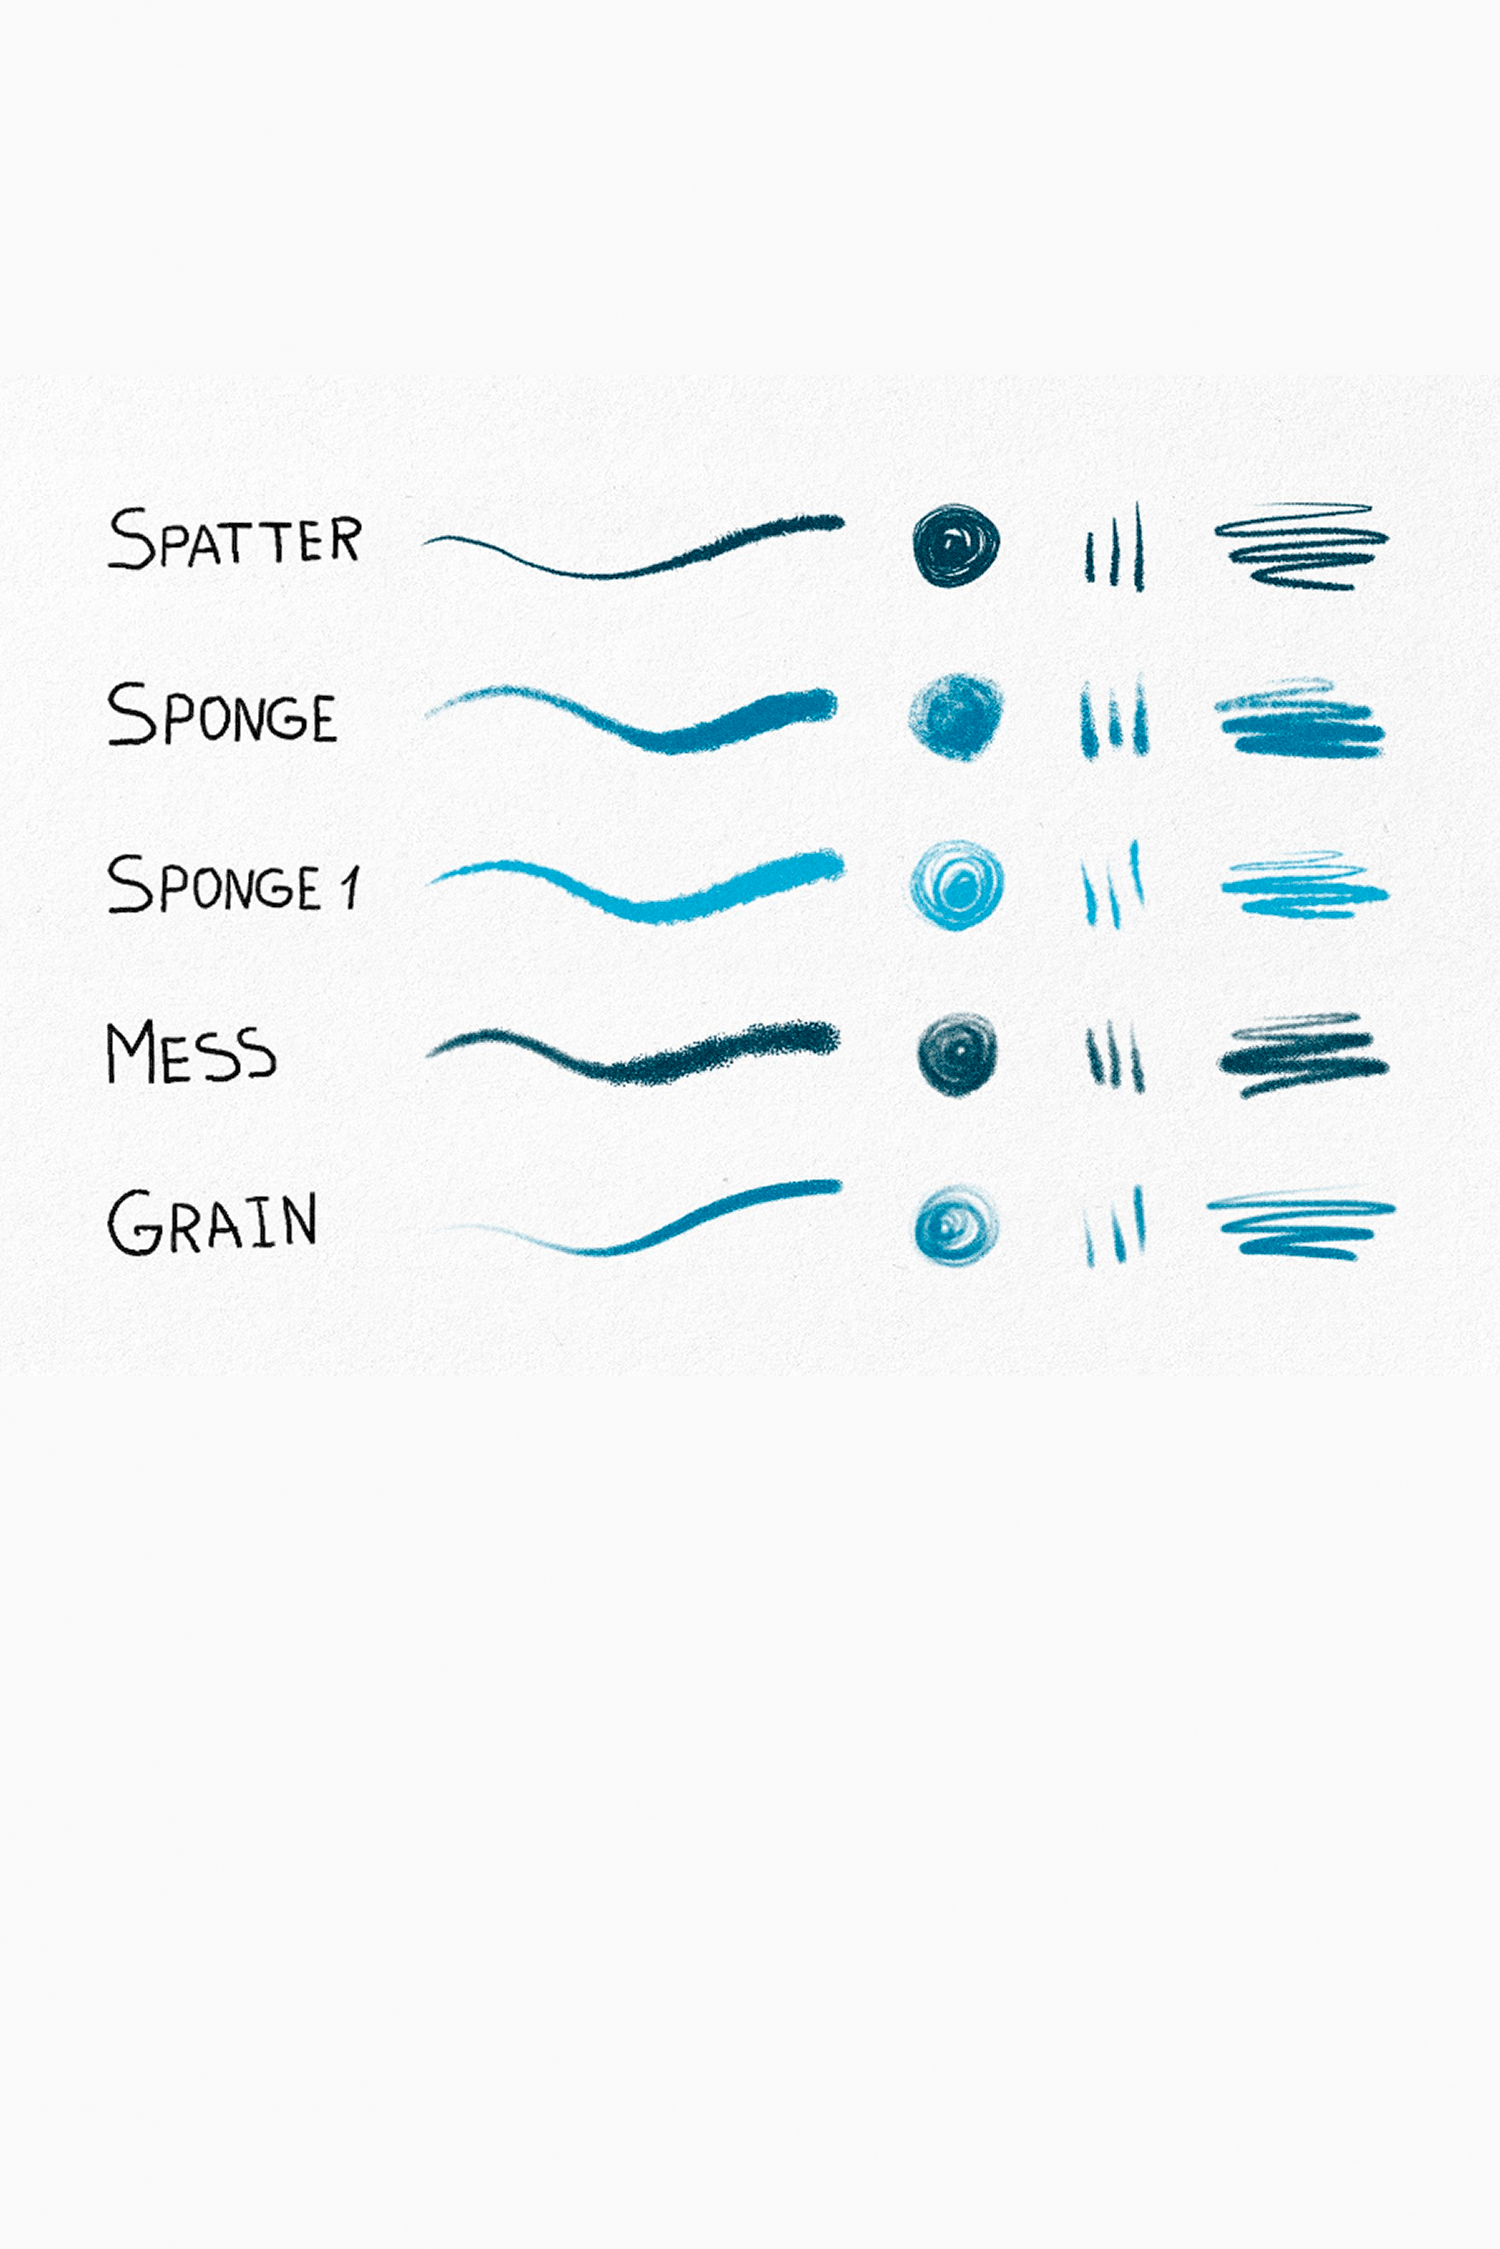 Hand-Drawn Brushes by PixelBuddha